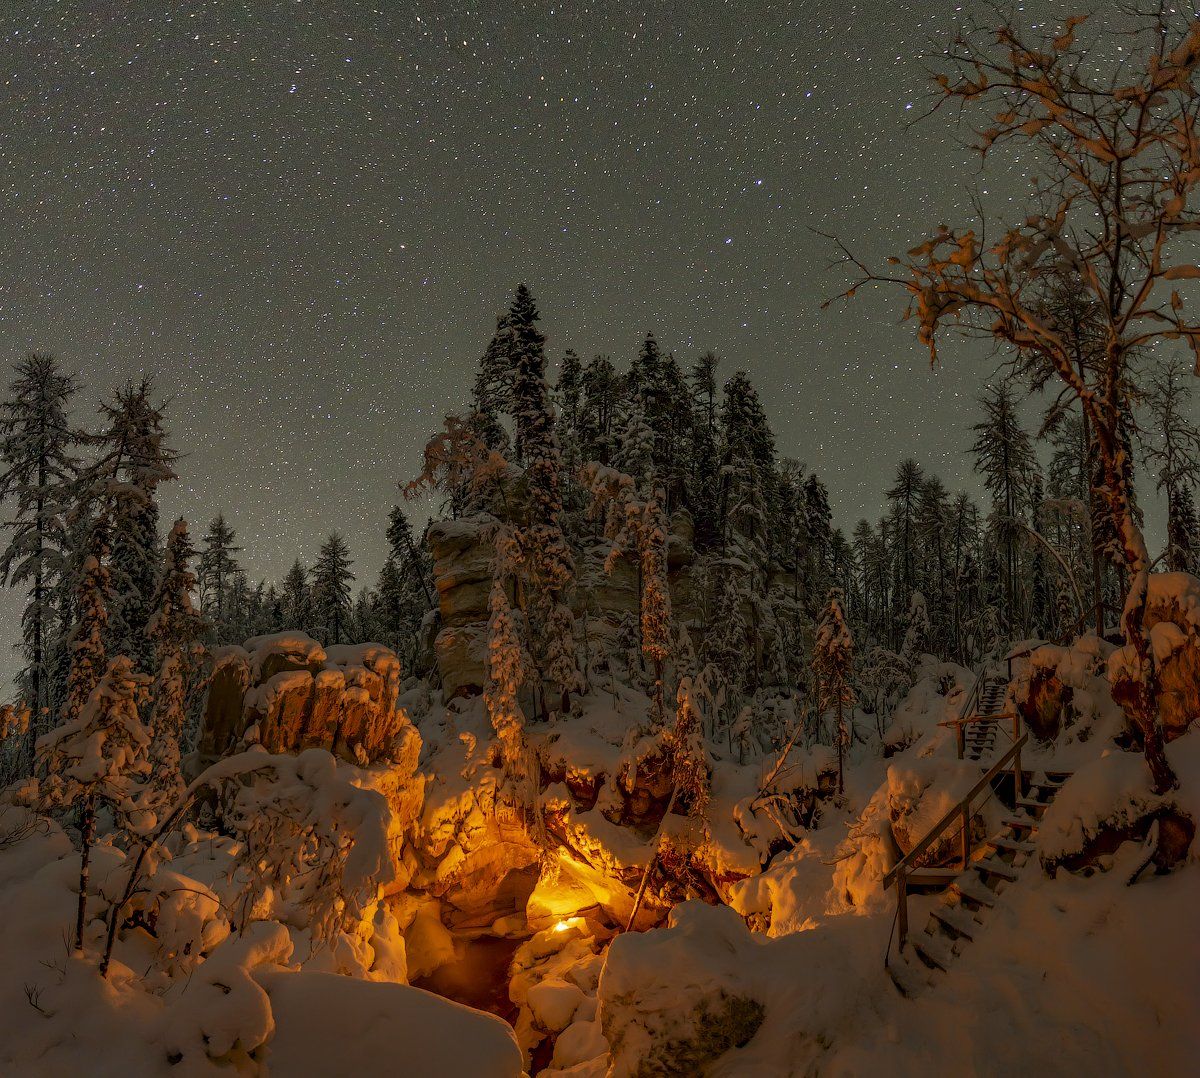 архангельская обасть, ночное фото, русский север, мороз, пинега, карст, Михаил Карпов